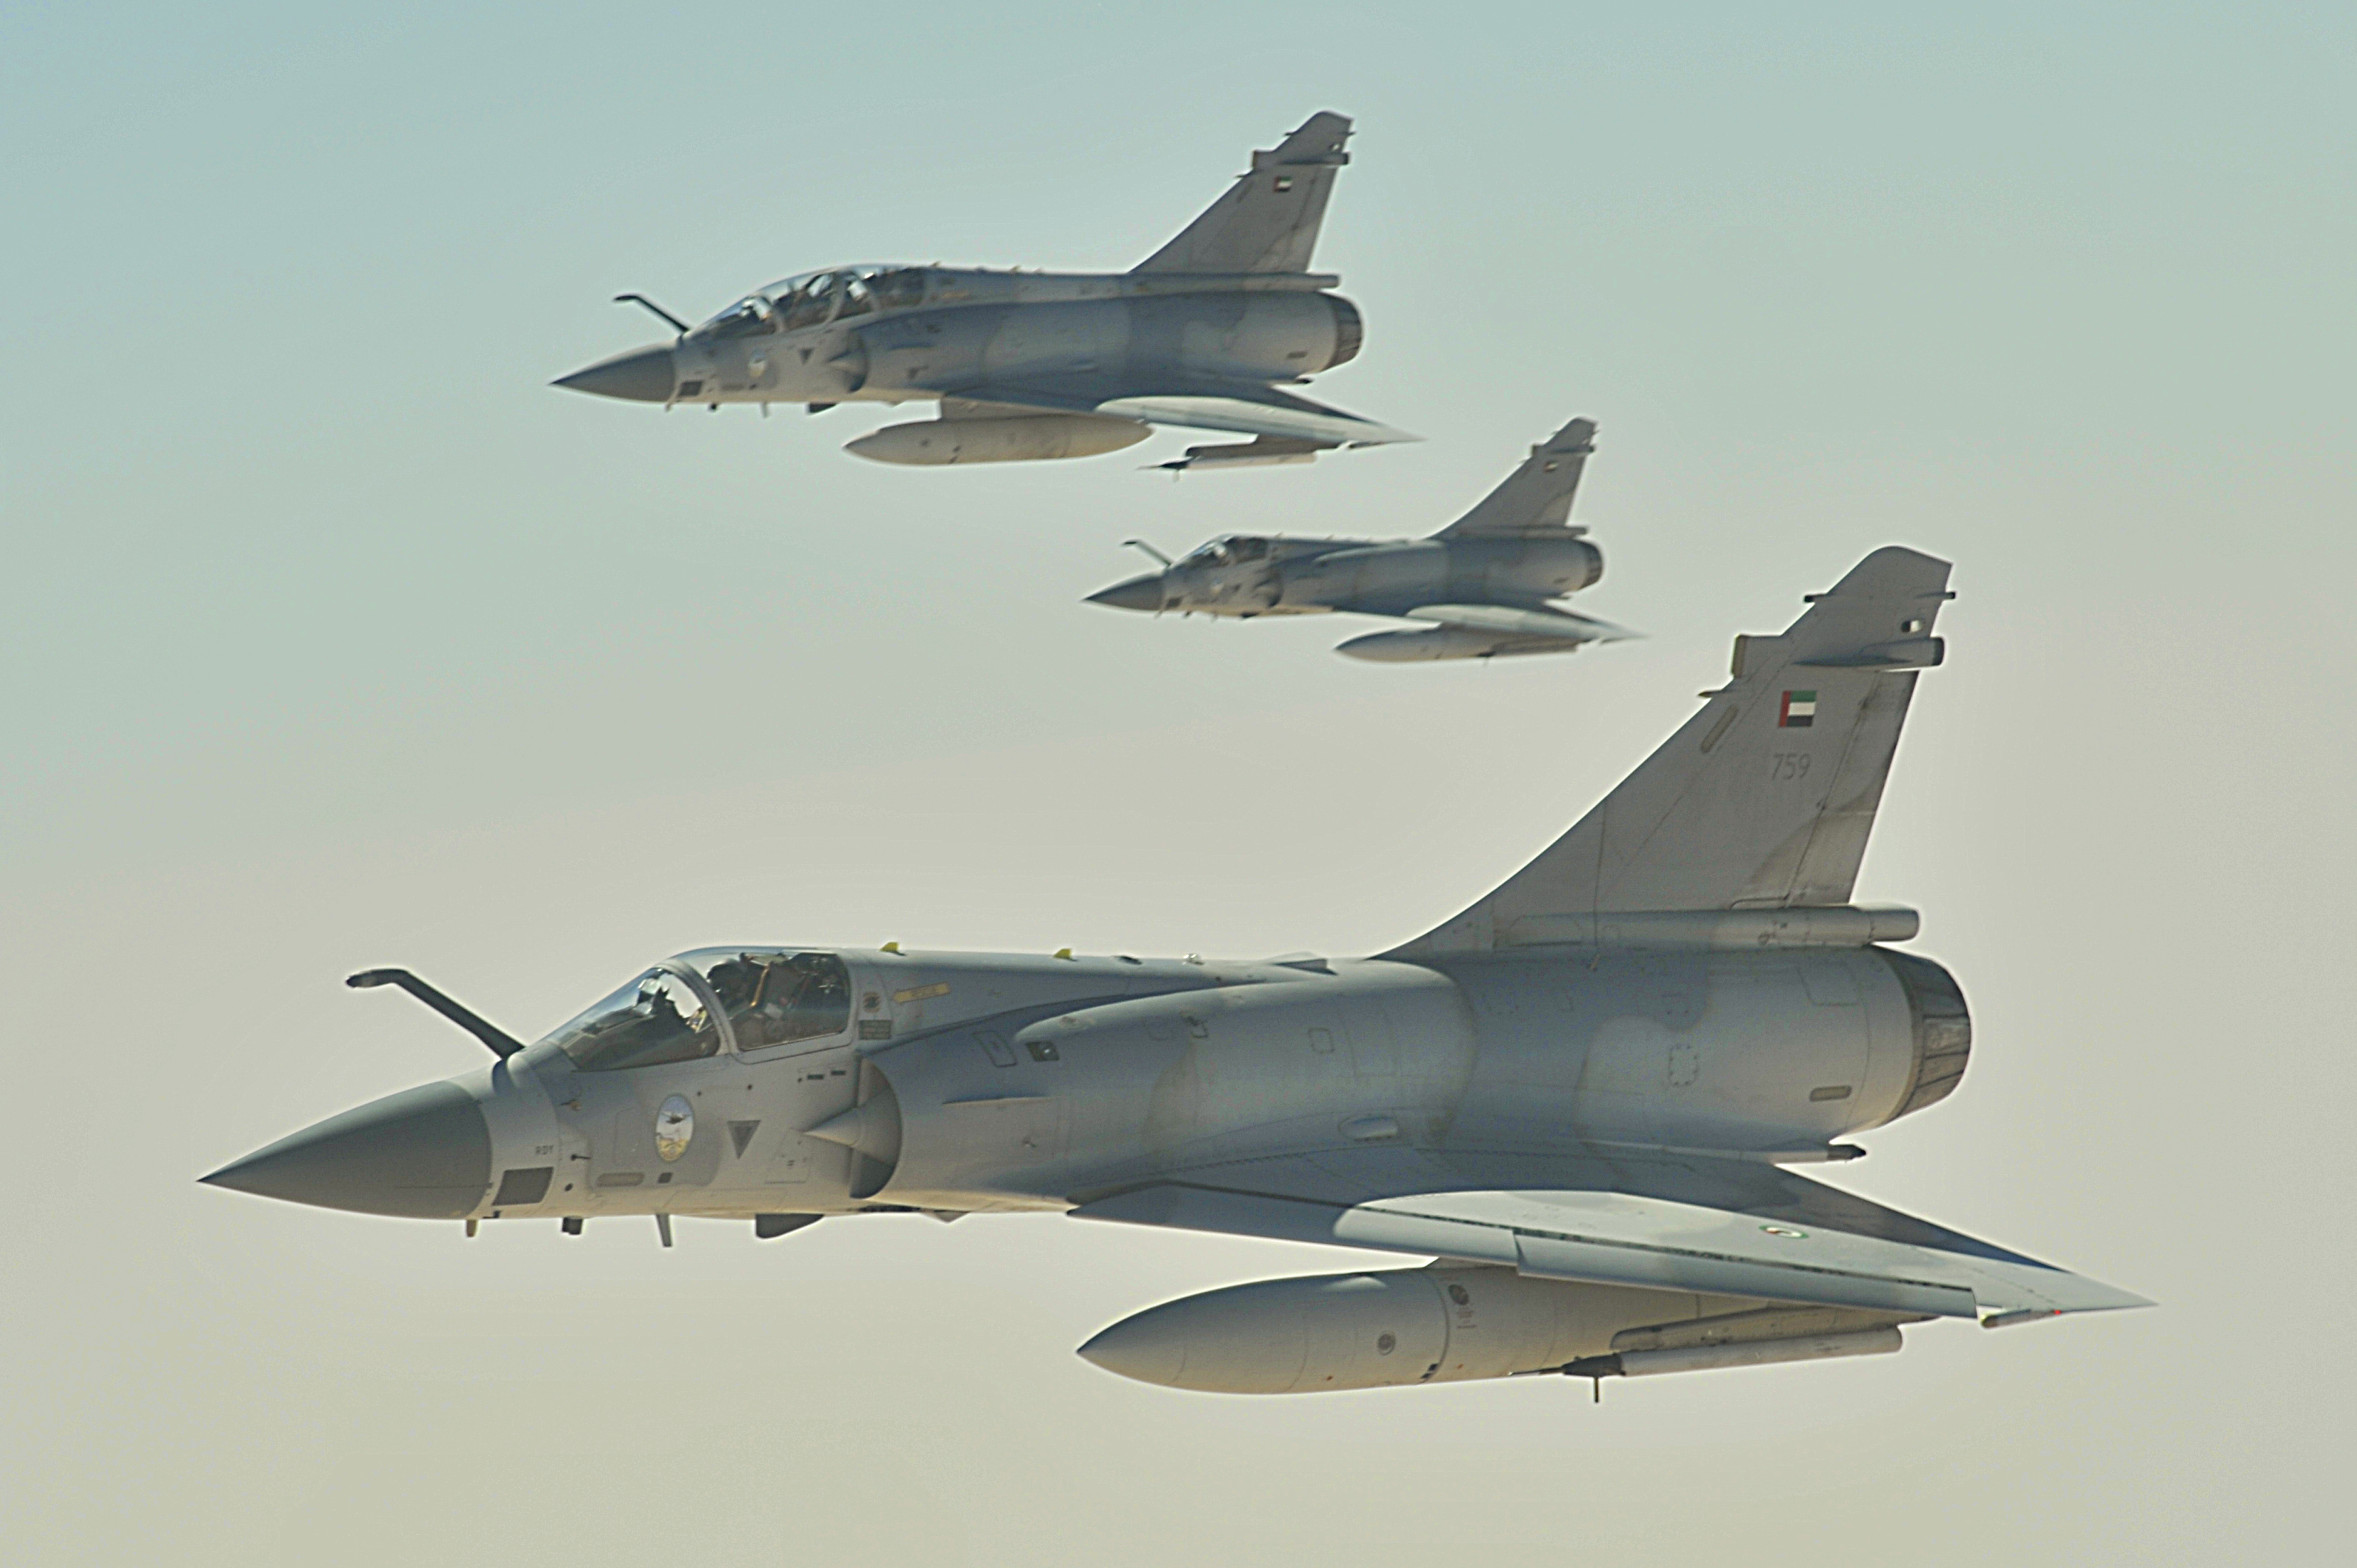 Emirate_Mirage_2000_jets.JPG